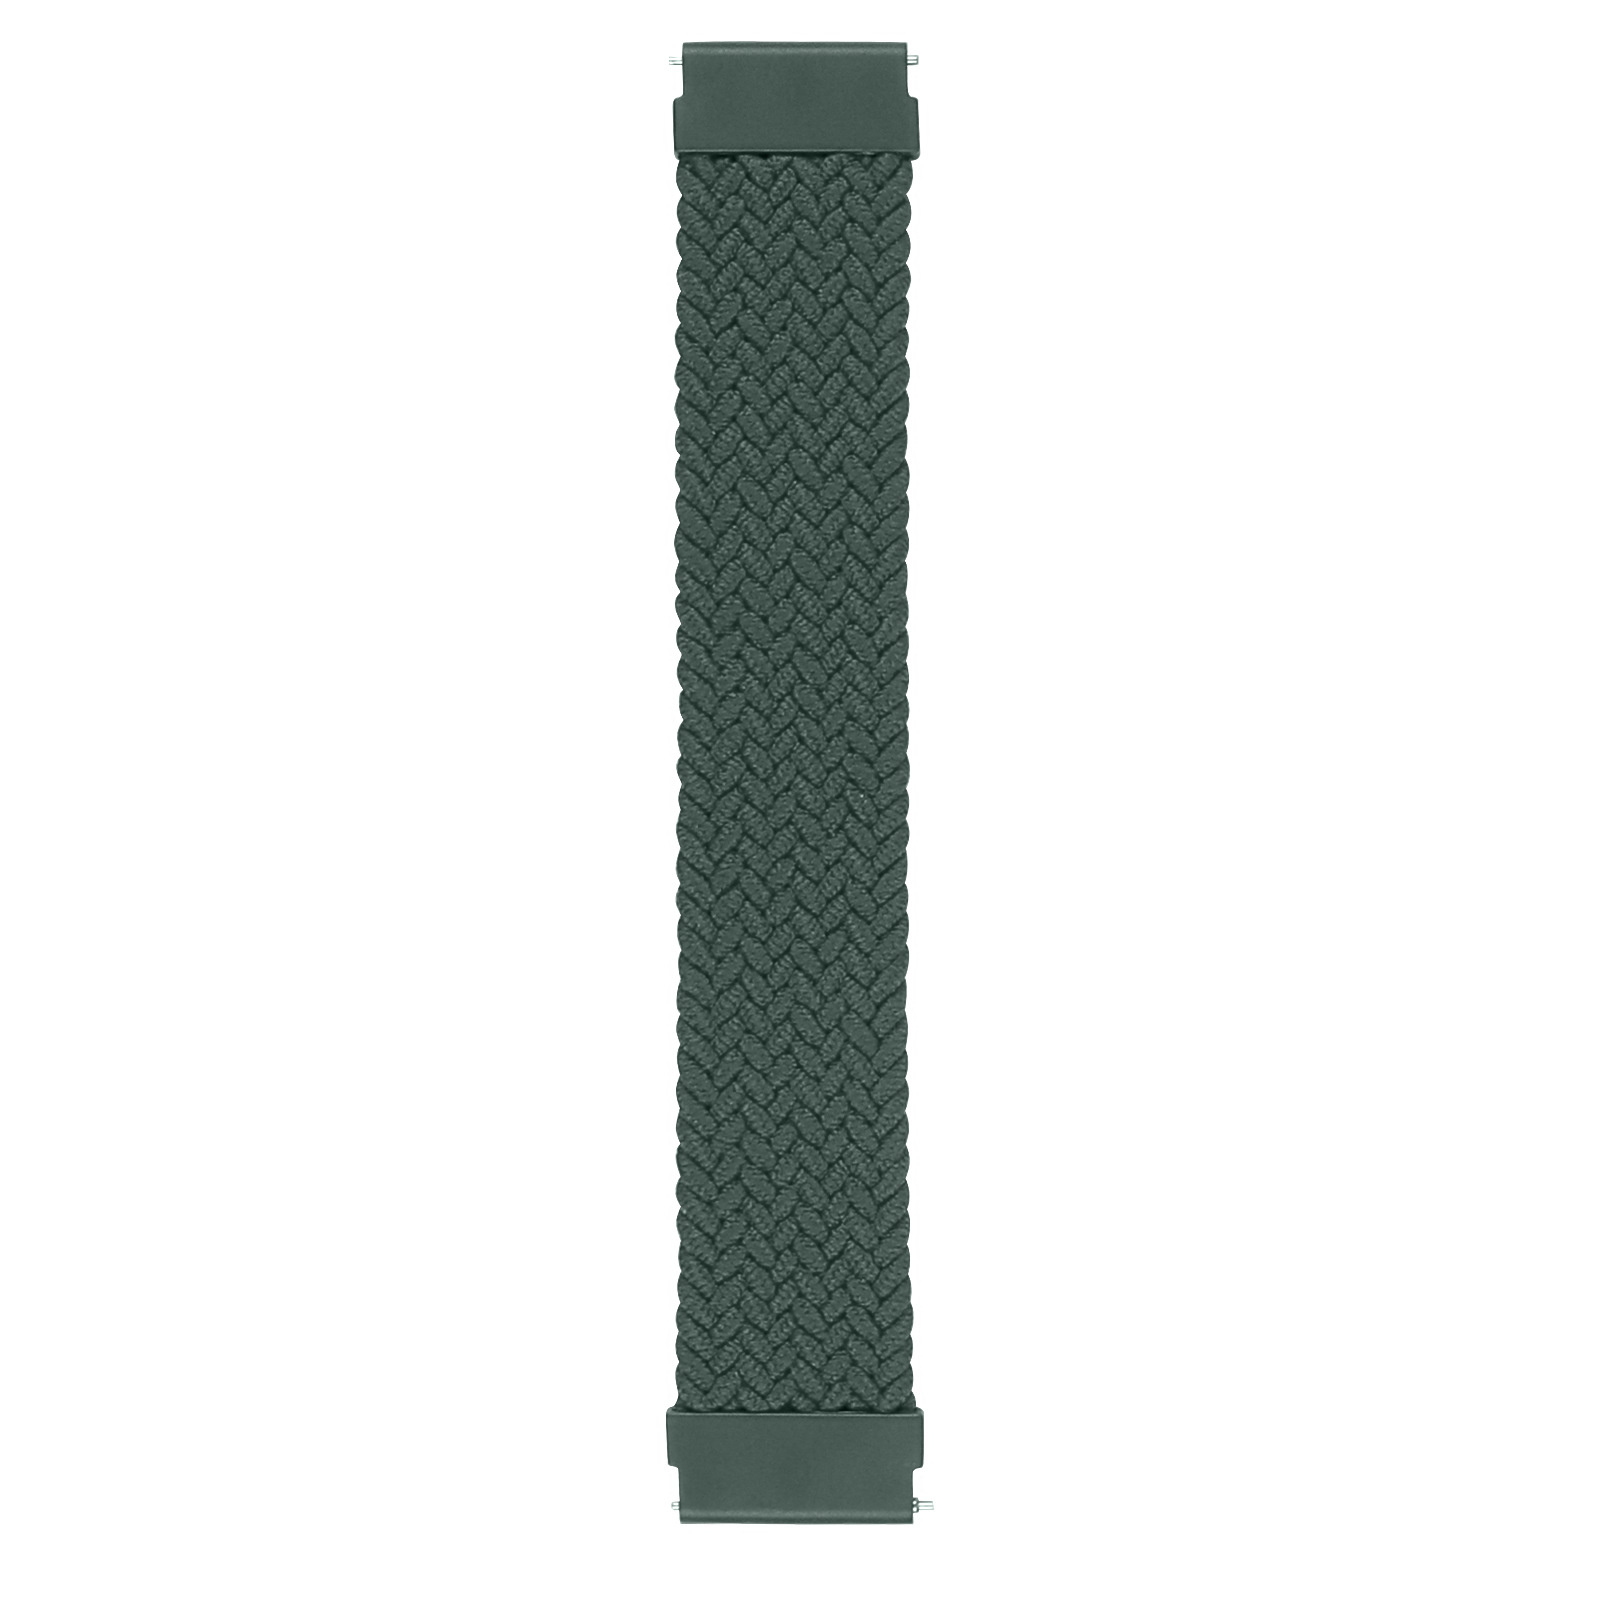 Cinturino Solo intrecciato in nylon per Samsung Galaxy Watch - verde inverness